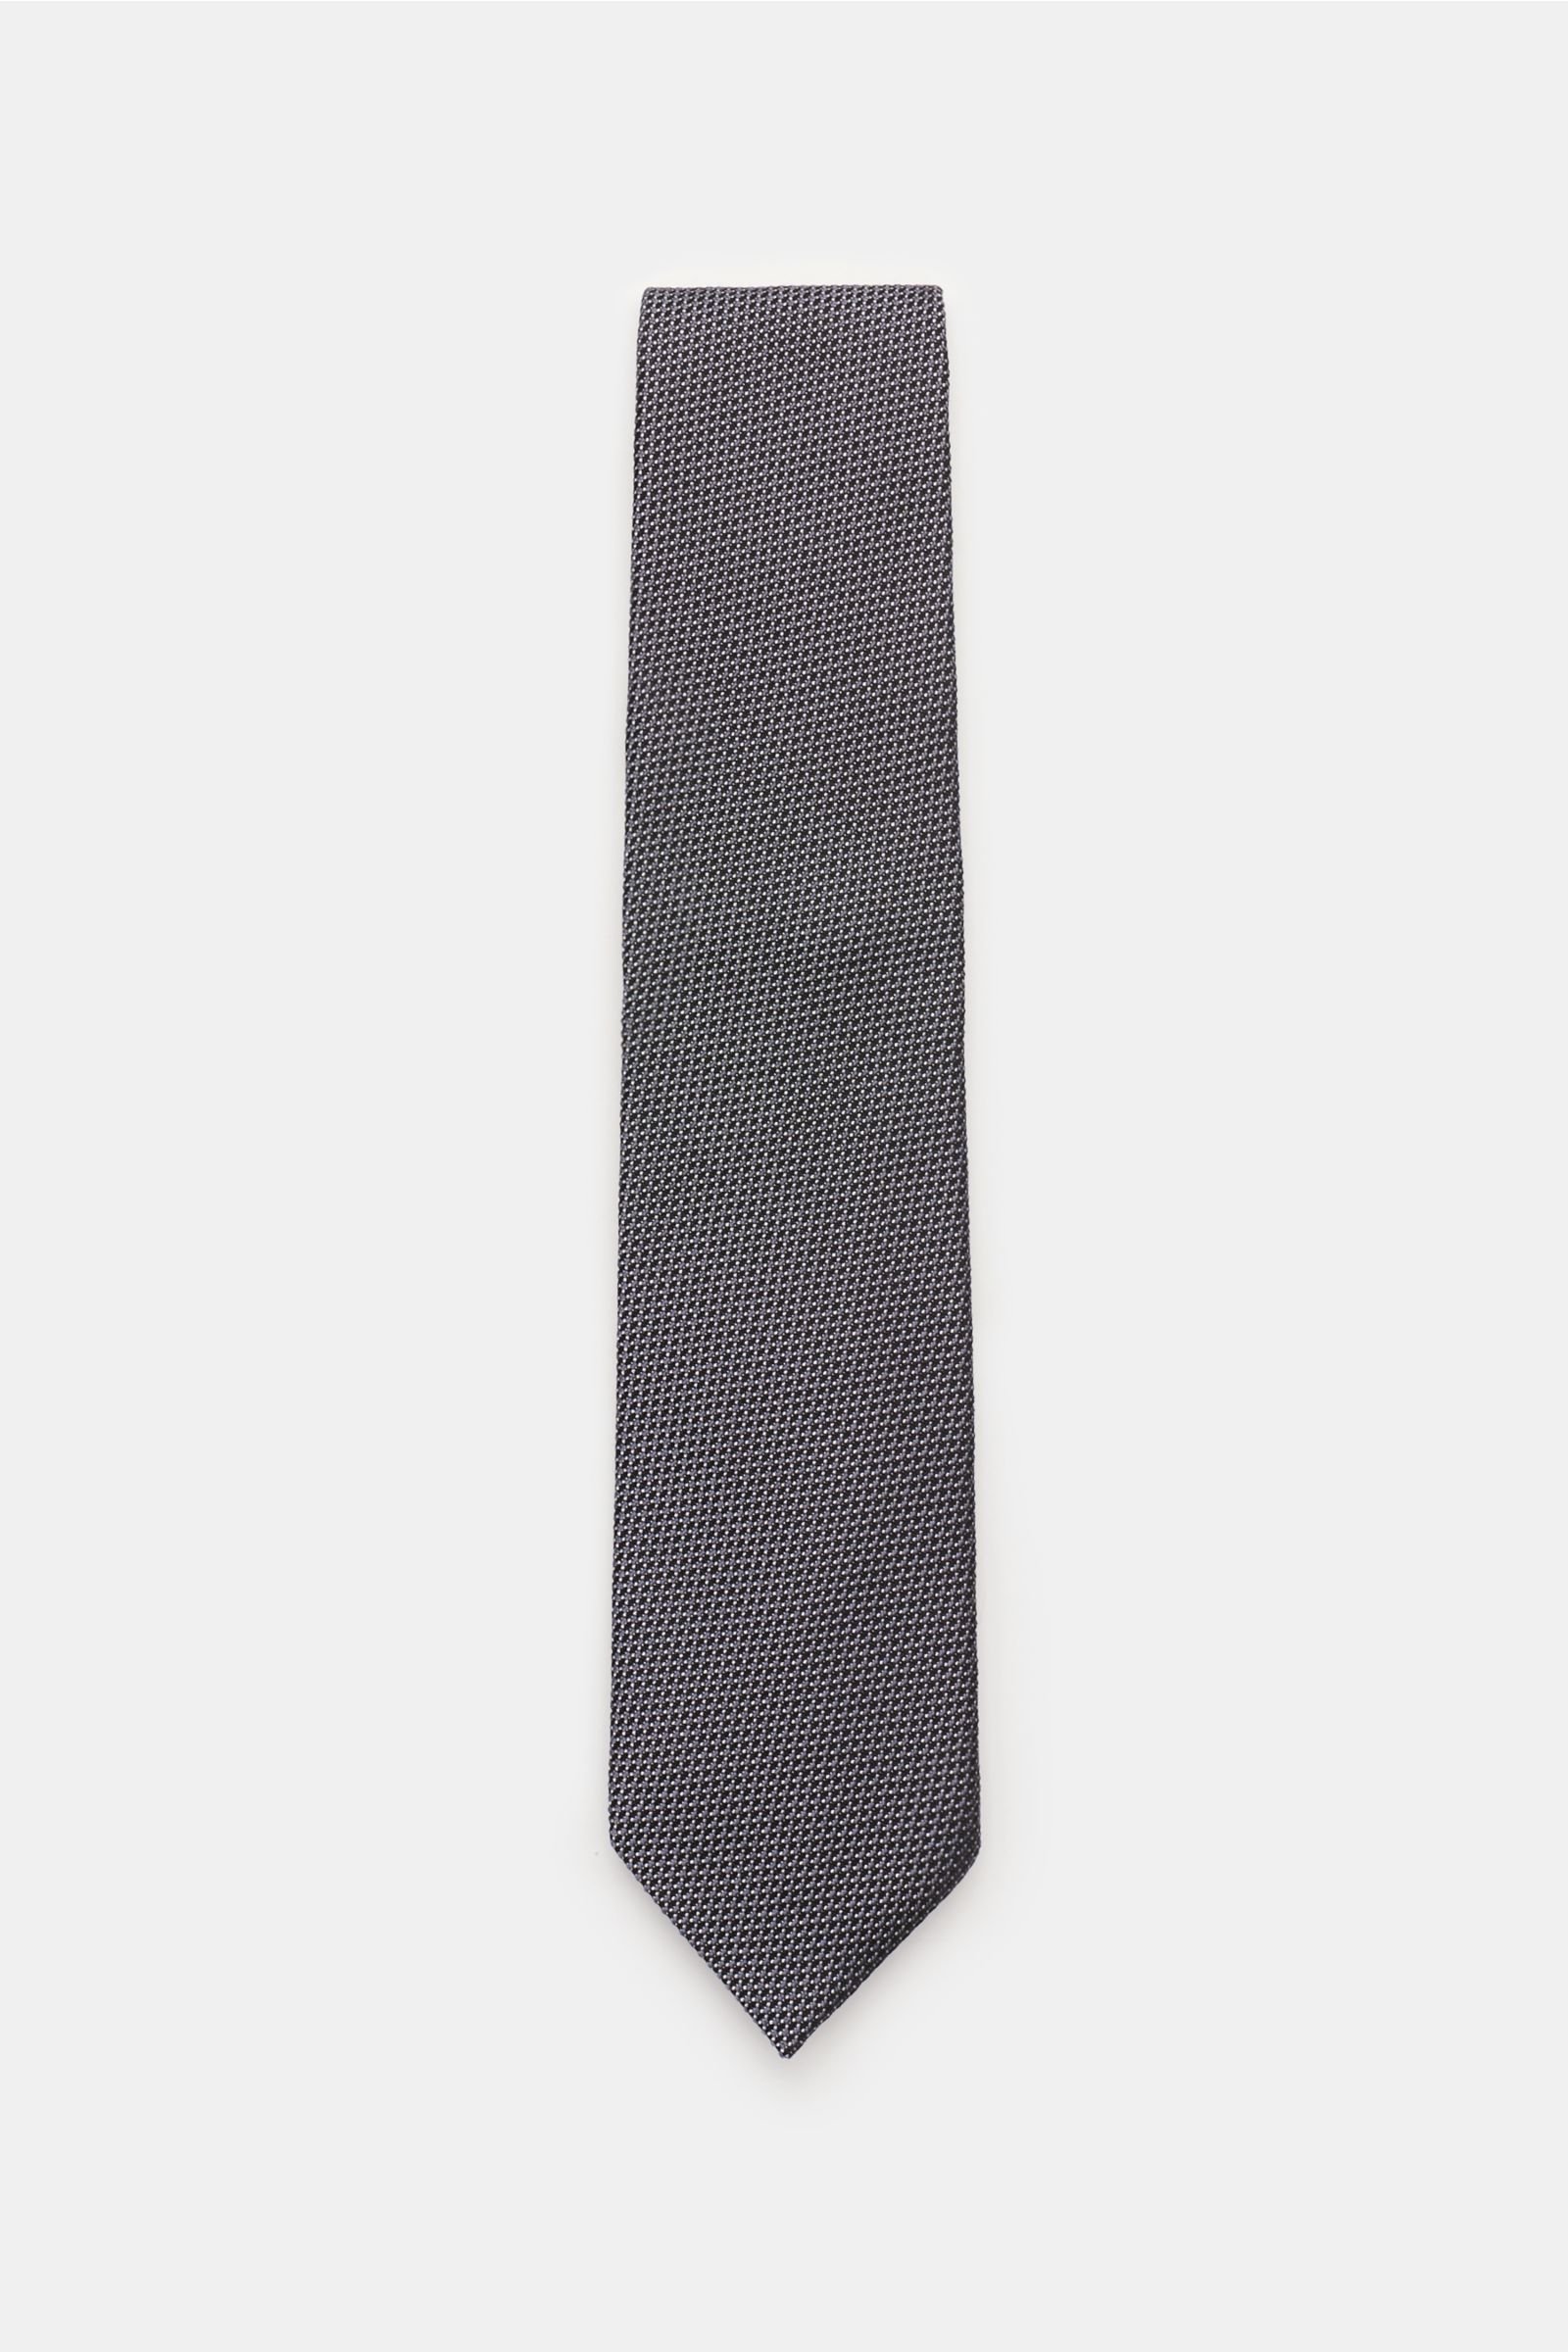 Tie grey/black patterned